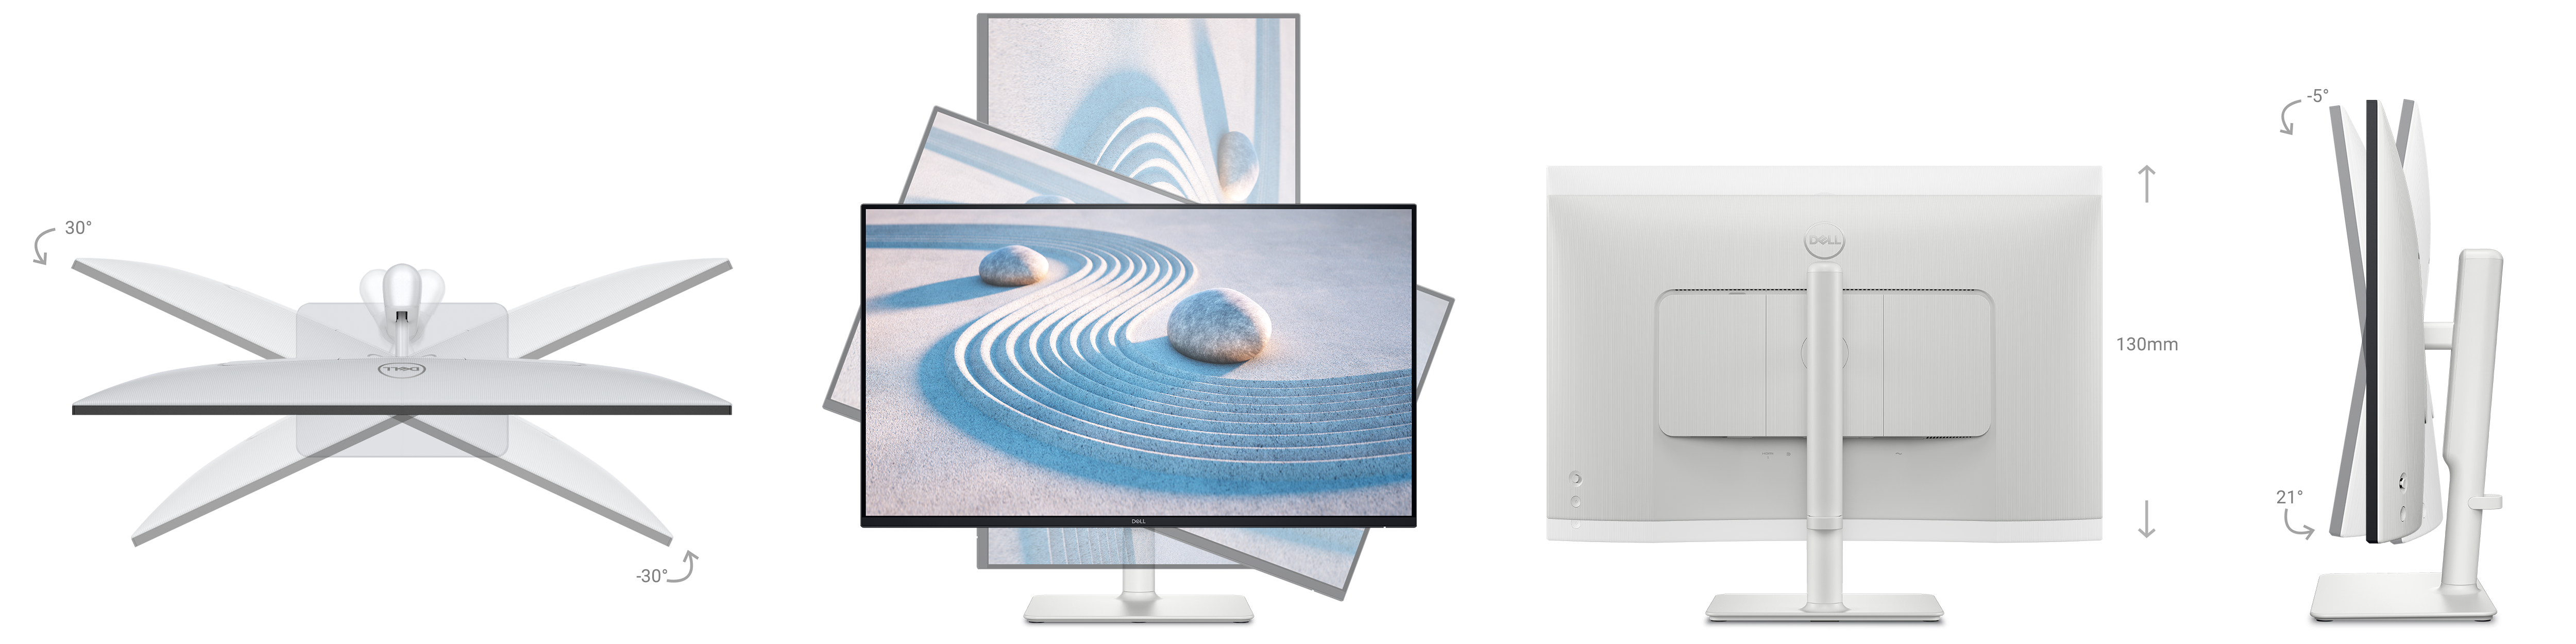 Recopilación de imágenes del monitor donde se muestra una inclinación de 30 grados, basculación, una reclinación de 21 grados y la capacidad de ajuste en altura de 130 mm.